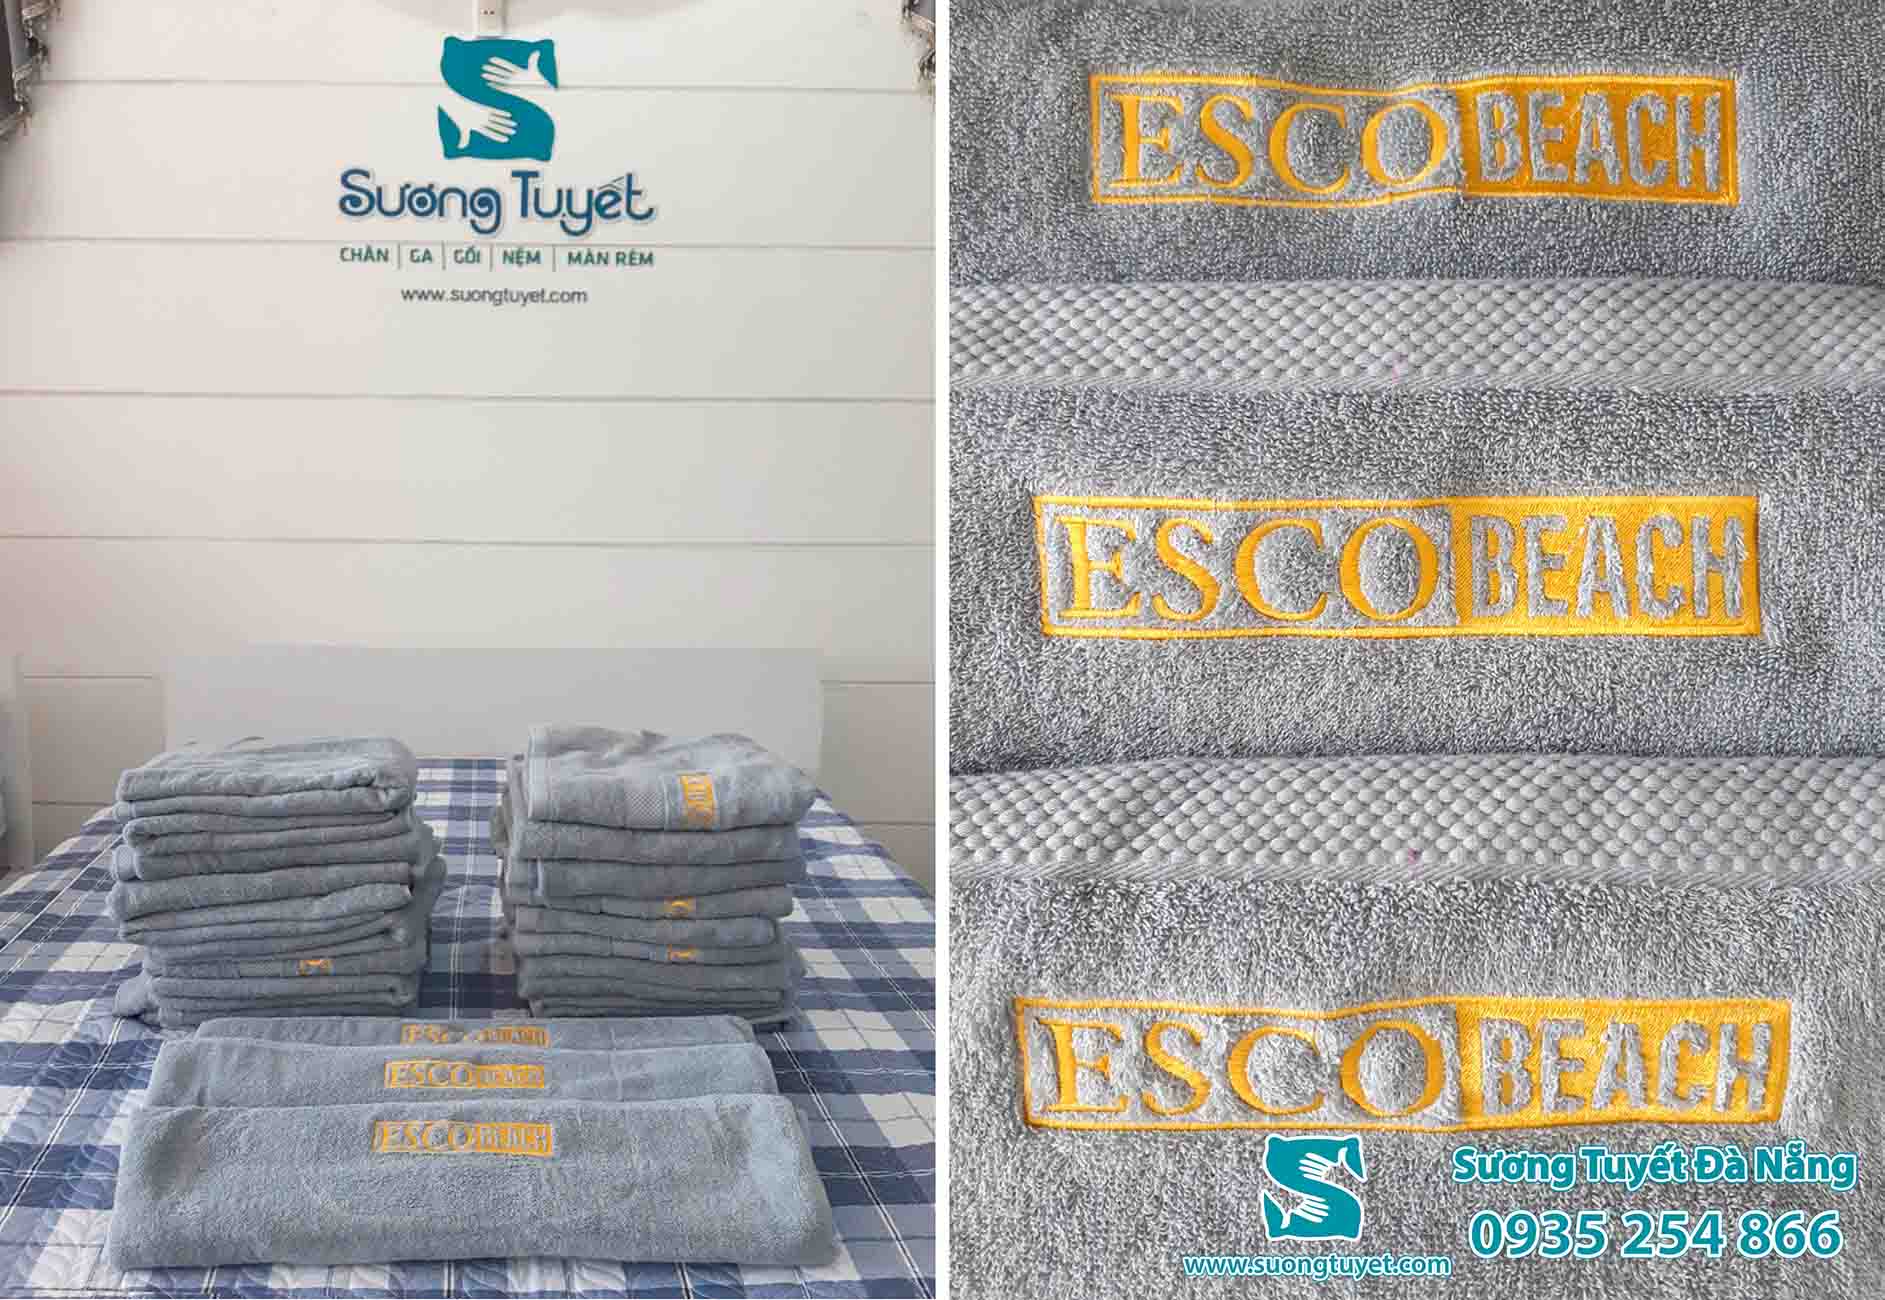 Giao khăn tắm, khăn mặt ESCO Beach Đà Nẵng